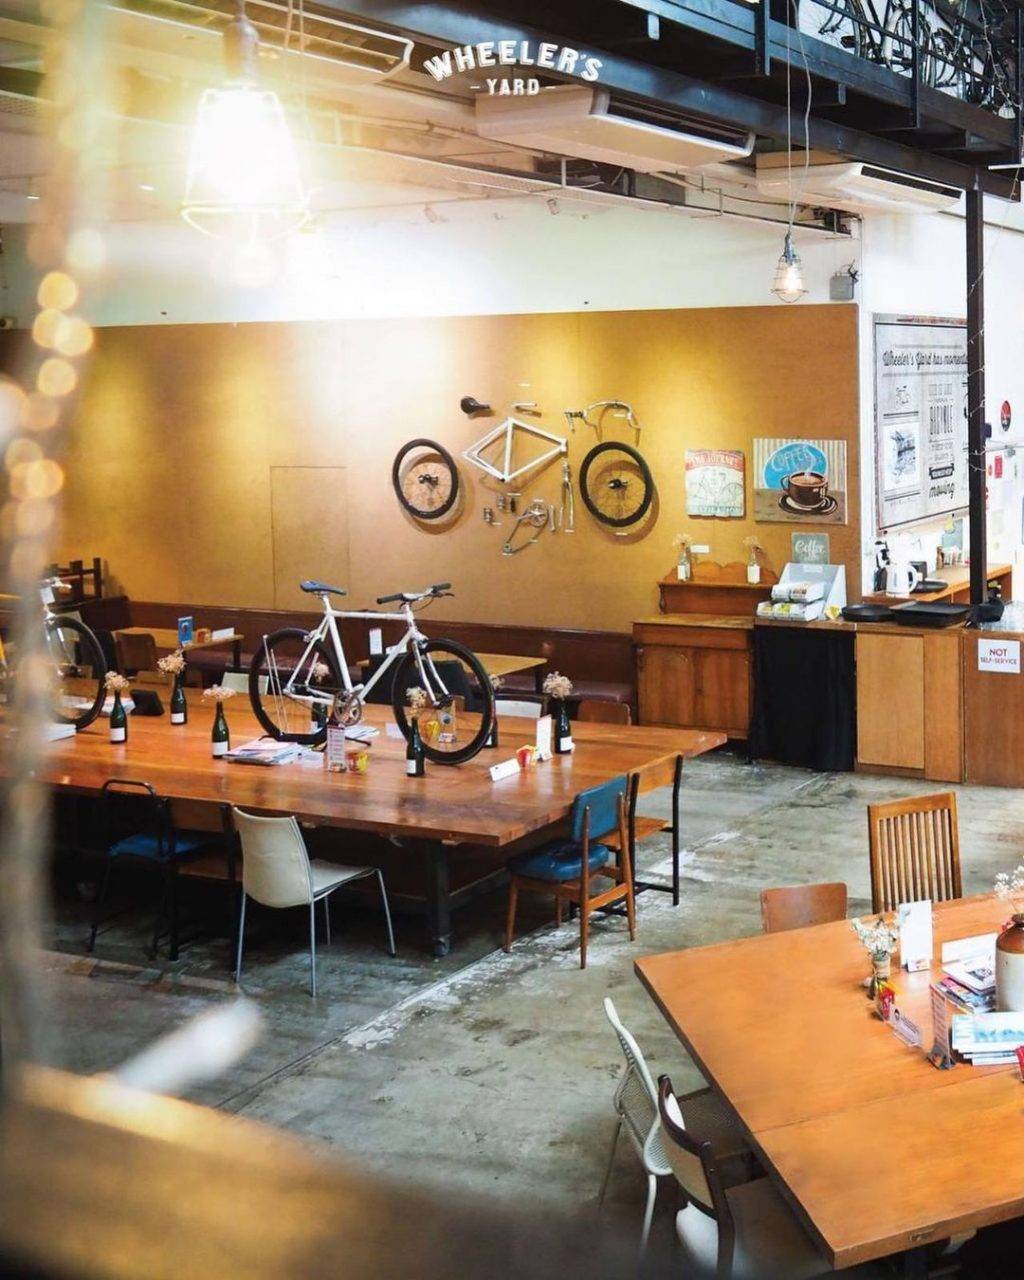 旧仓库的秘密🤫 Wheeler's Yard独立式单车咖啡厅🚴‍♀️ 硬朗工业风+蓝色大闸门个性又带感